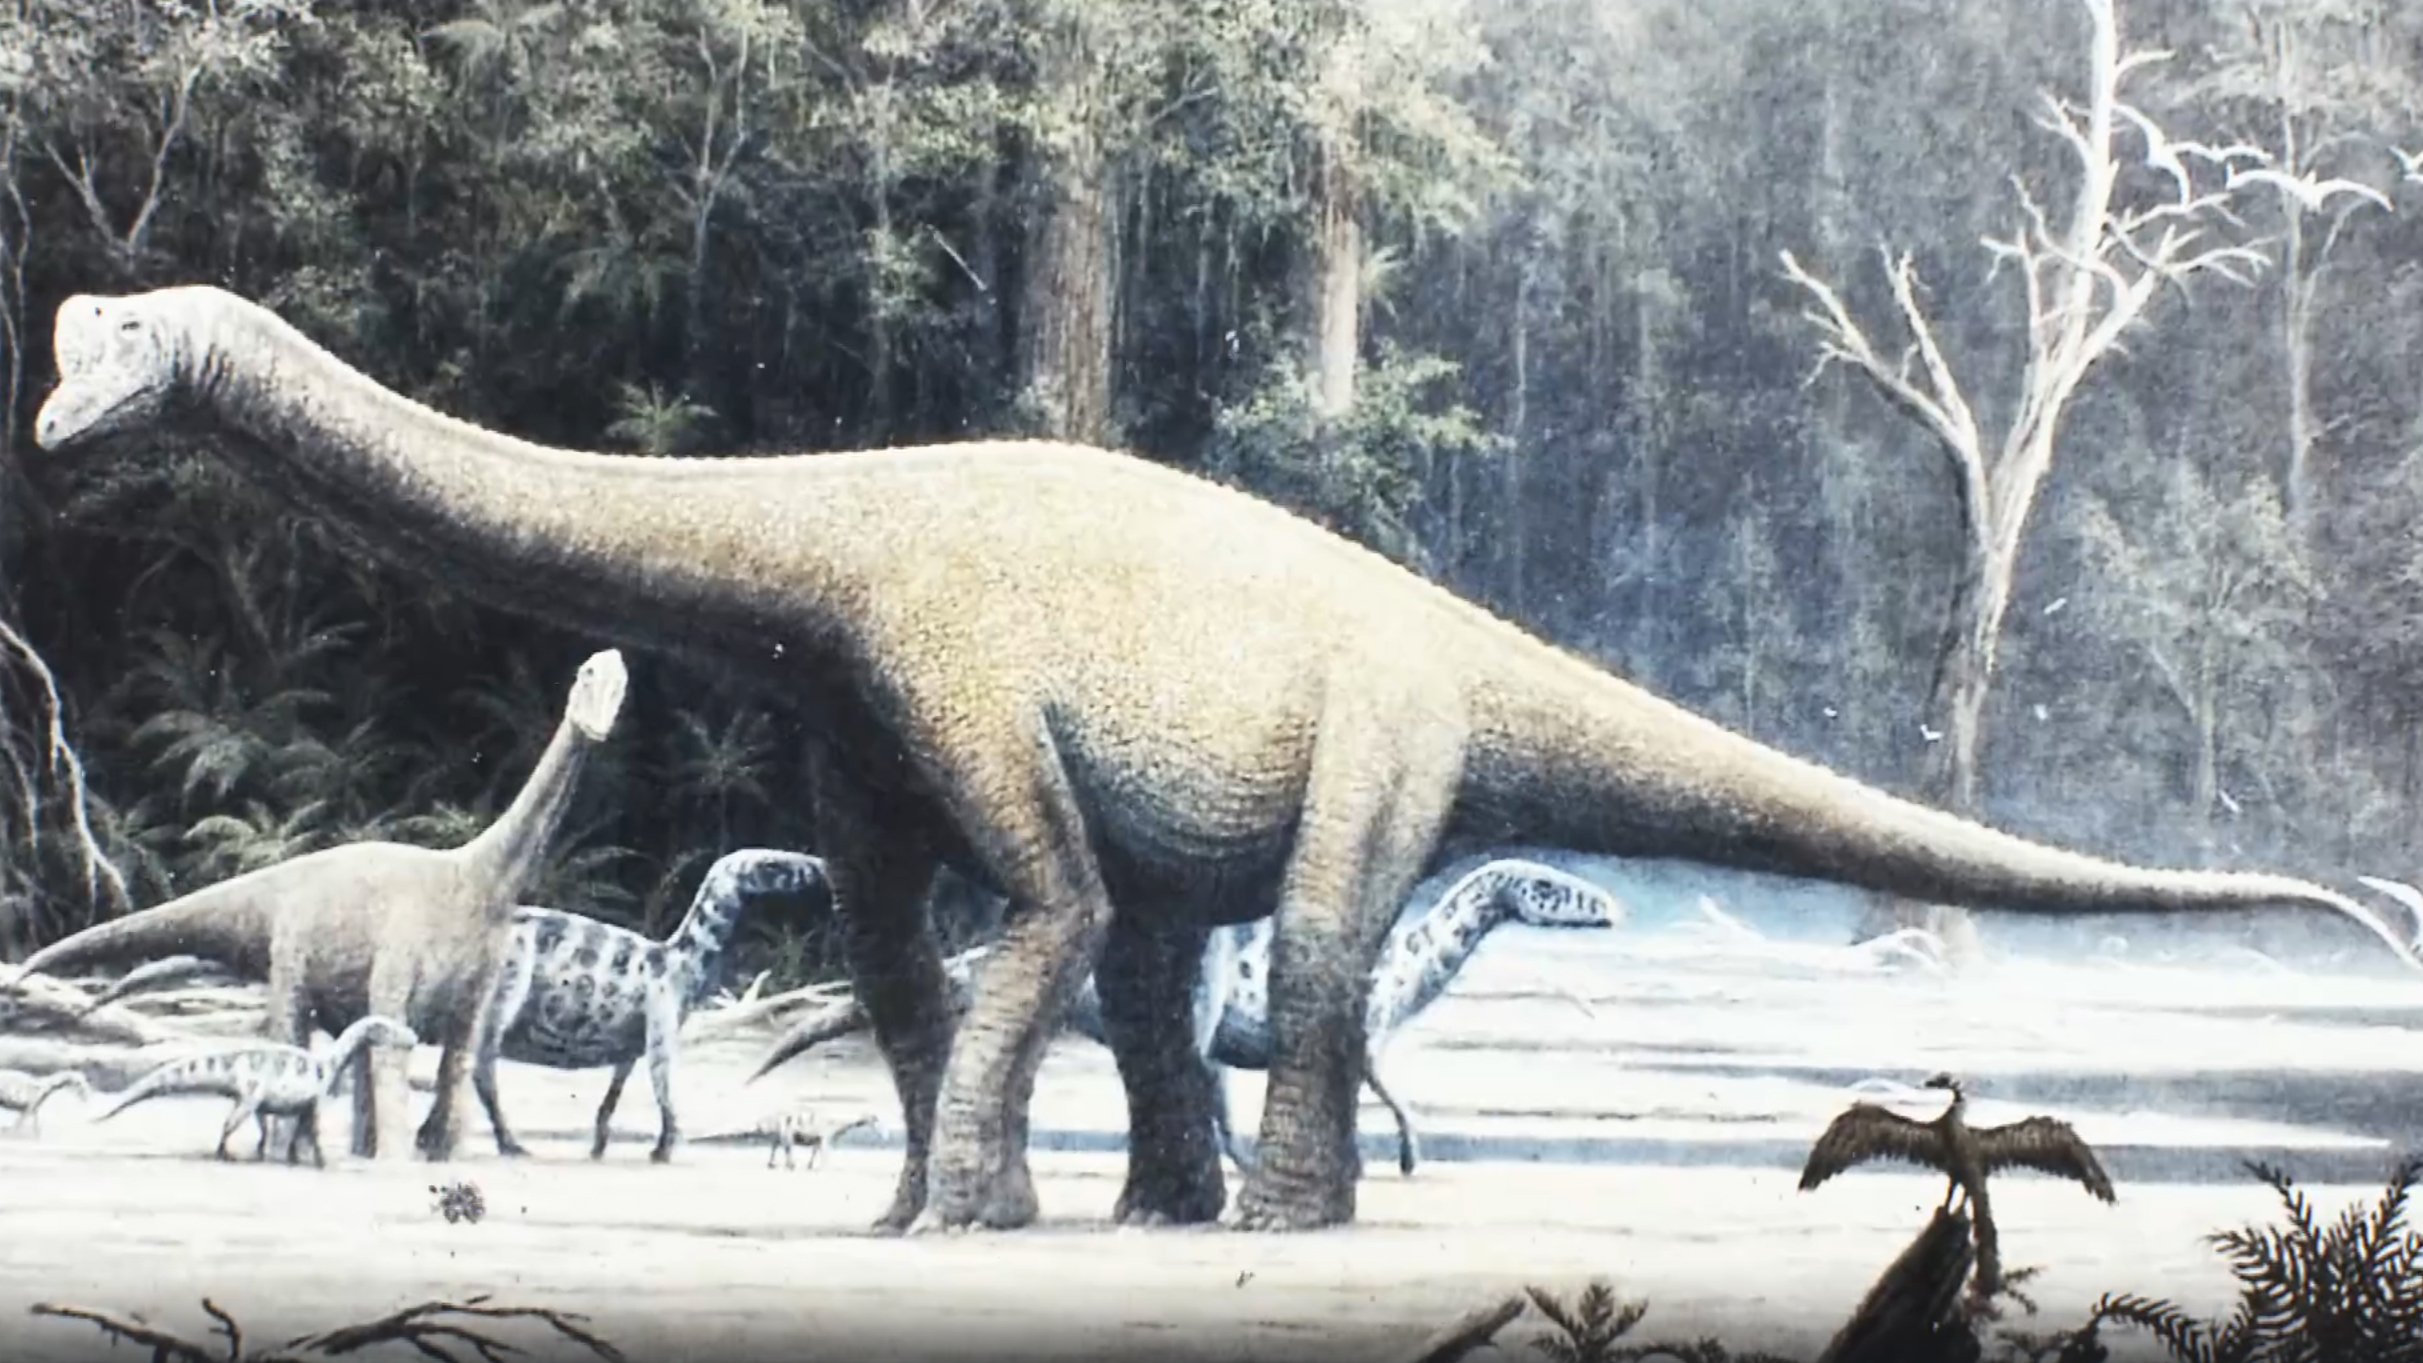 Виды и названия динозавров